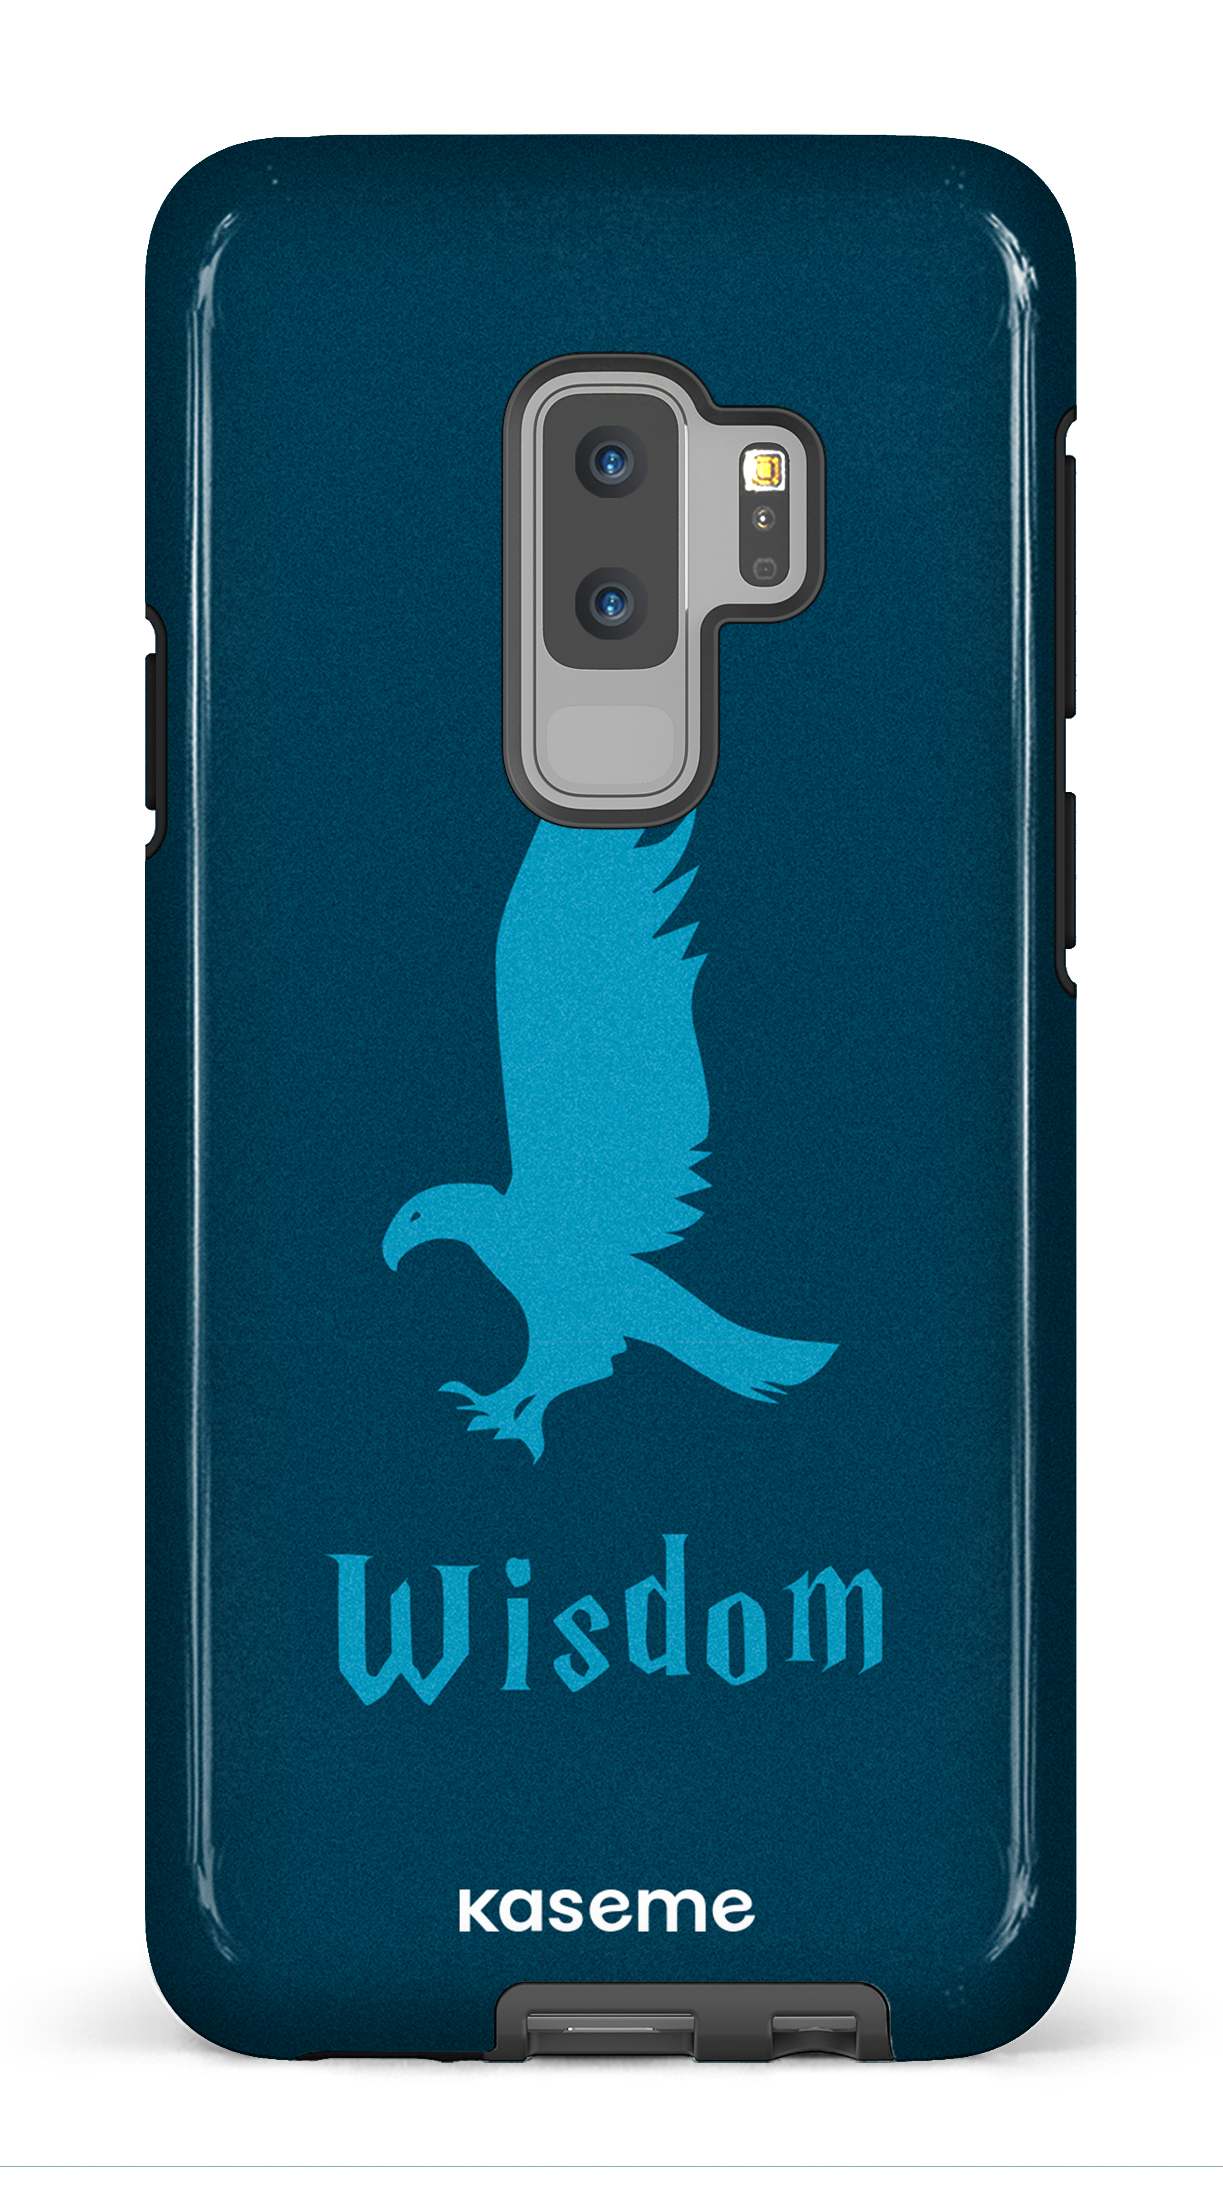 Wisdom - Galaxy S9 Plus